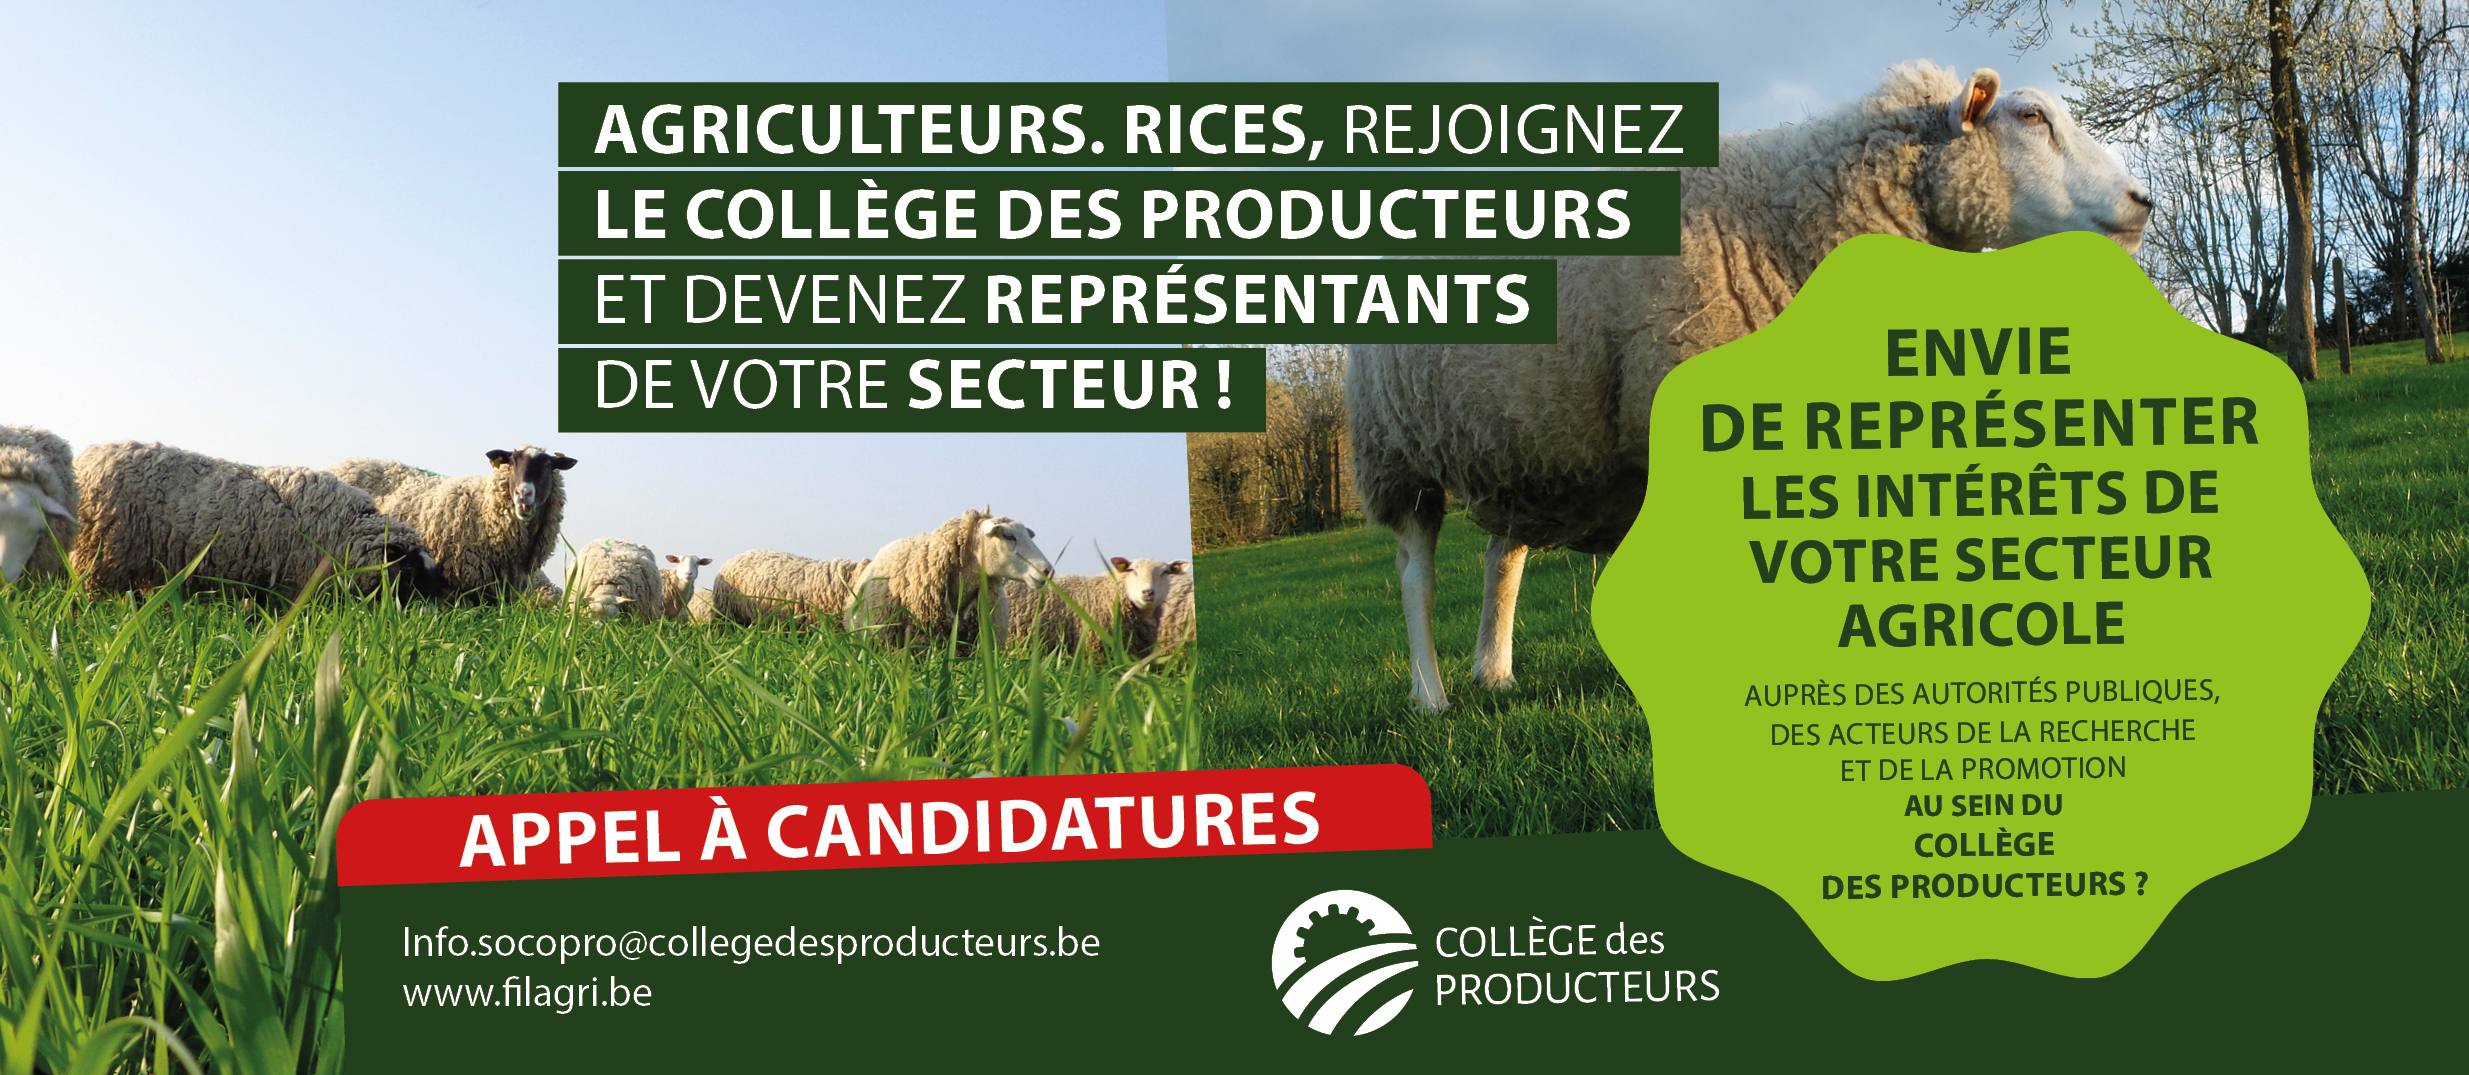 [Elections au Collège des Producteurs] Appel aux producteurs ovin et caprin : représentez votre secteur au sein du Collège des Producteurs !